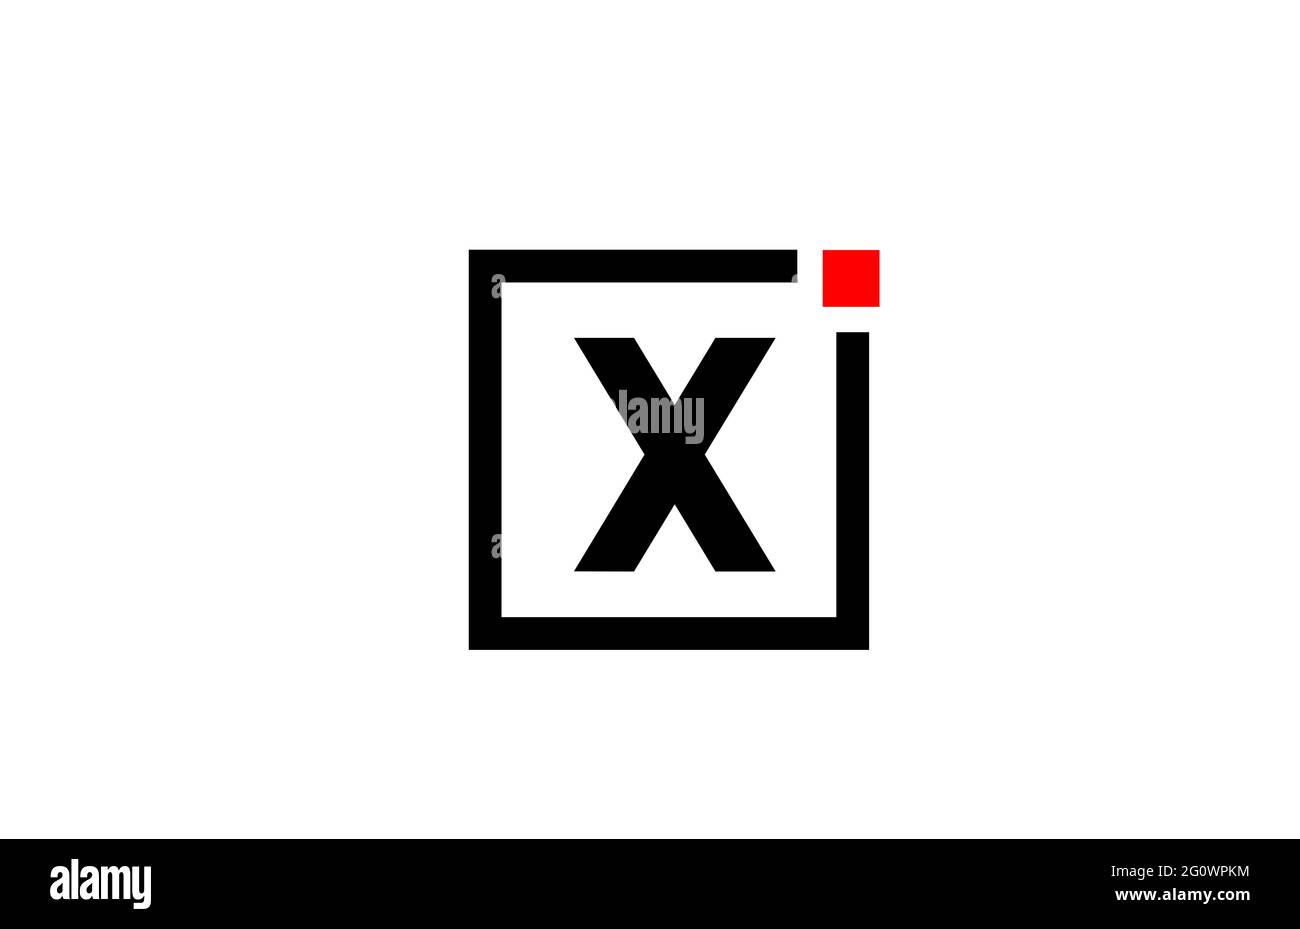 Logo con l'icona dell'alfabeto X in bianco e nero. Design aziendale e aziendale con punto quadrato e rosso. Modello di identità aziendale creativa Foto Stock